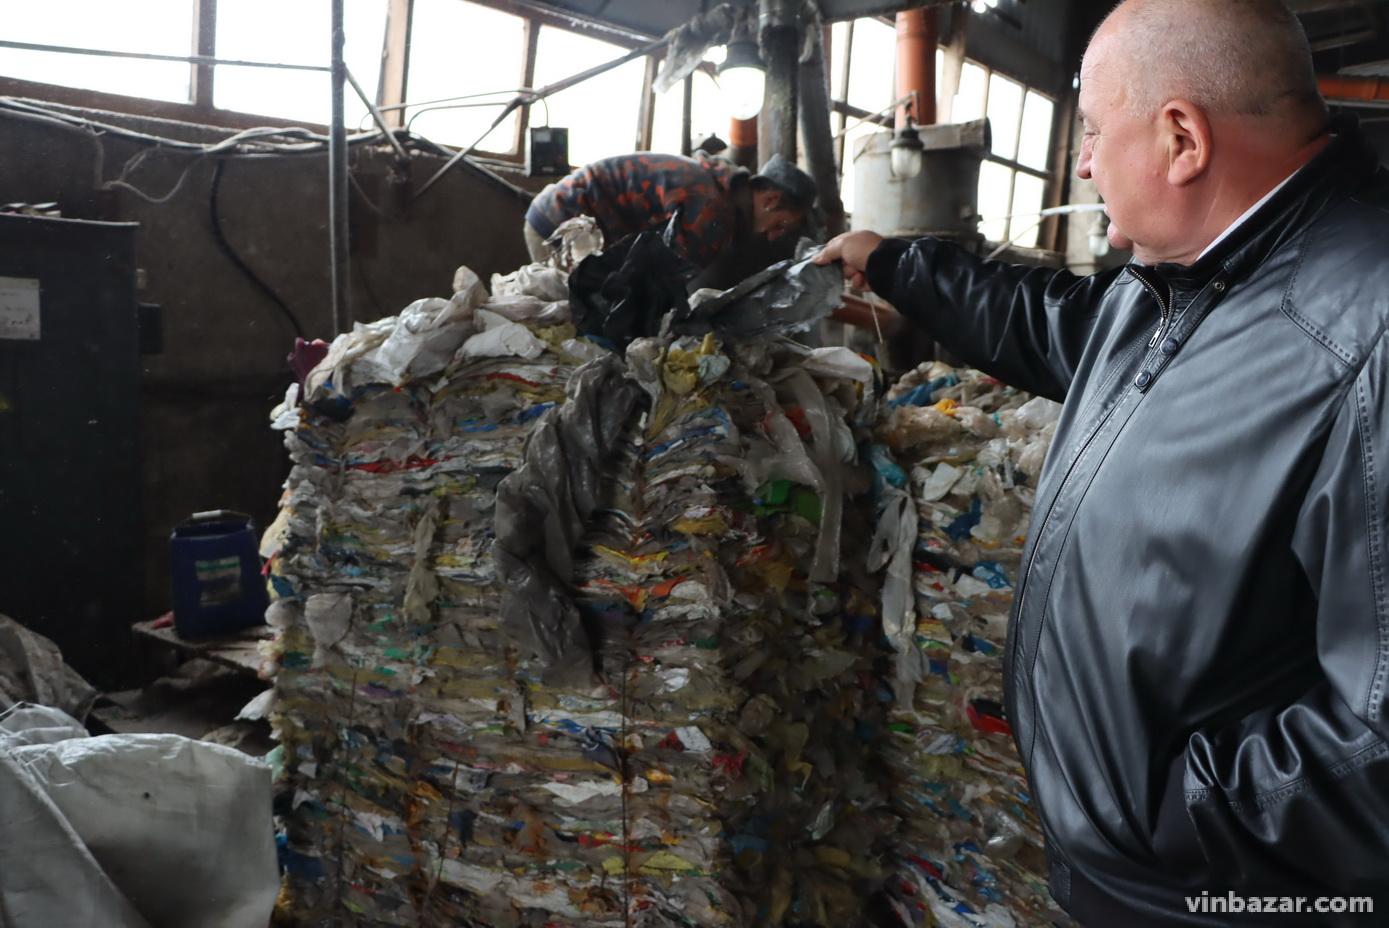 Завод у Вінниці виготовляє кришки для люків зі сміття. Продукцію експортують до Європи та Латинської Америки (Фото)